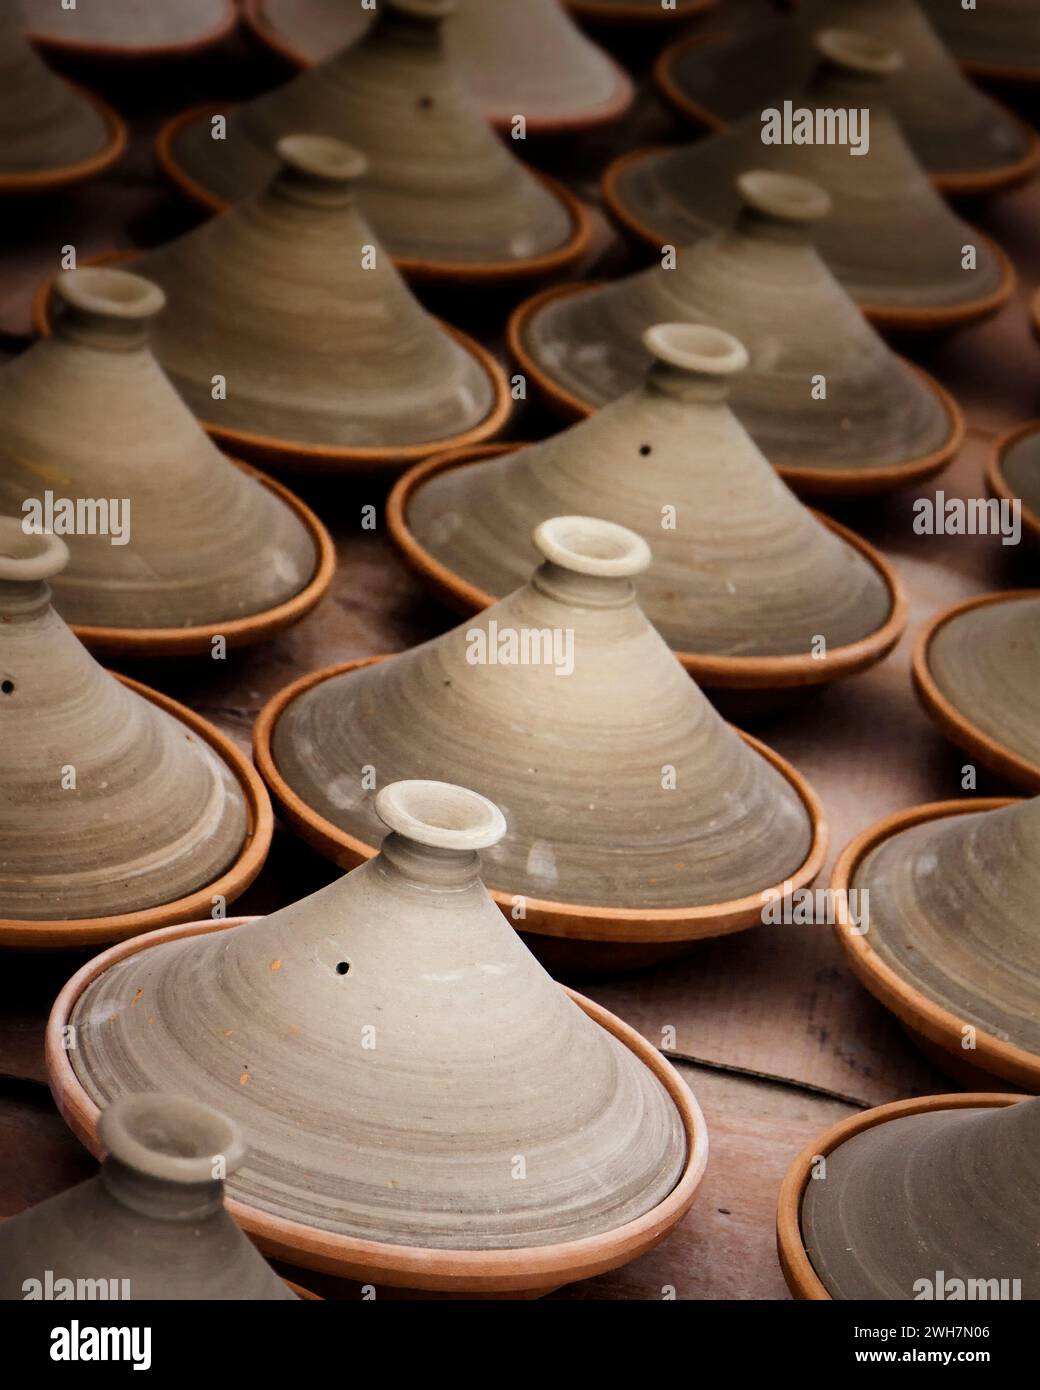 Rangées de pots de tagine en argile faits à la main à vendre dans un marché marocain Banque D'Images